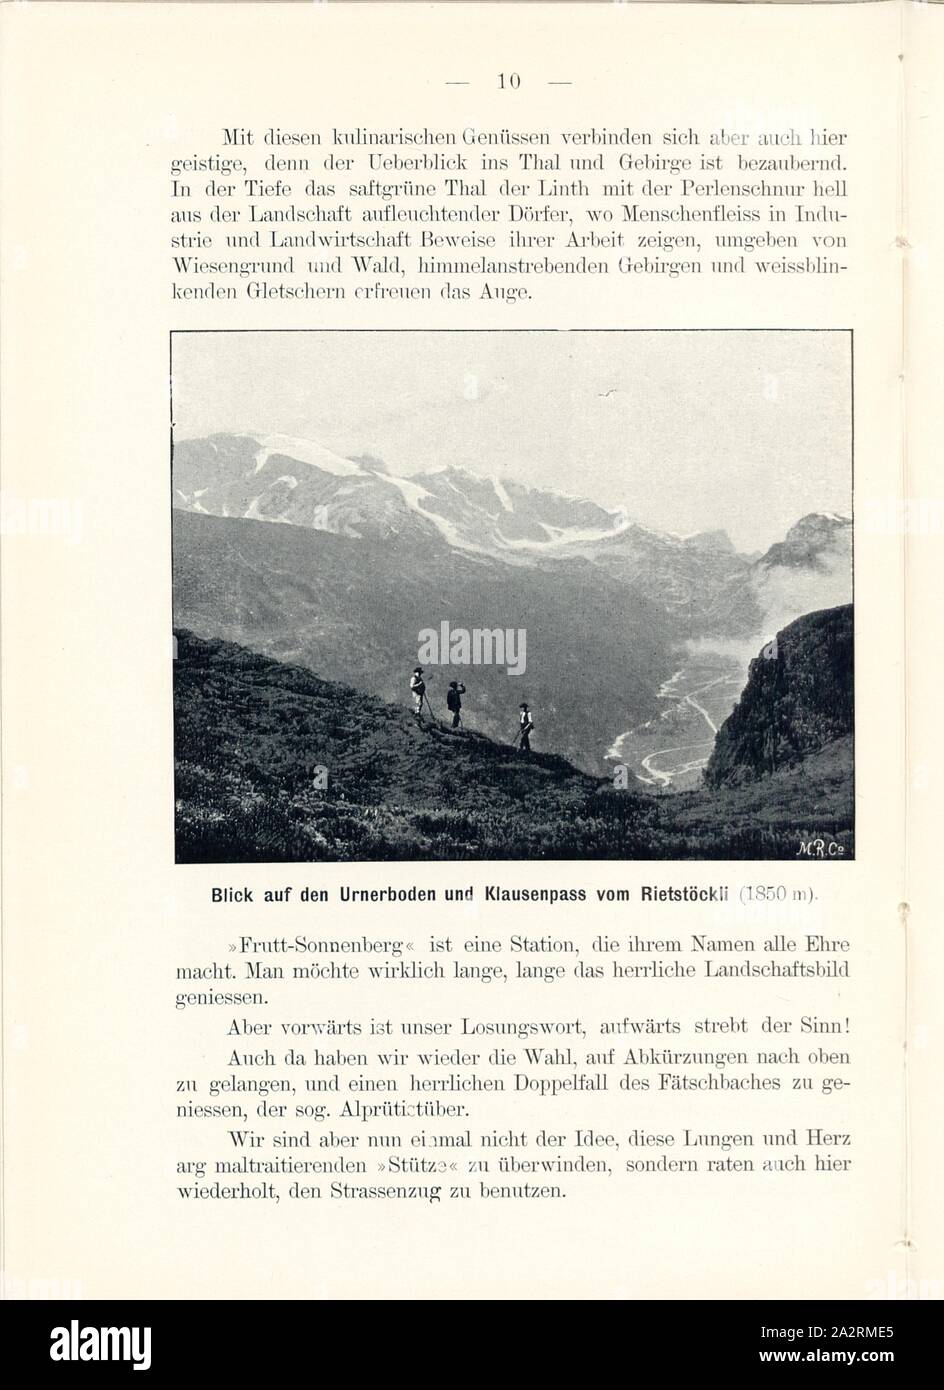 View of the Urnerboden and Klausenpass from Rietstöckli, Rietstöckli in the Canton of Glarus, Signed: M.R.C, Fig. 9, p. 10, Meisenbach, Riffarth und Co. (imp.), 1900, J. Knobel: Illustrierter Reisebegleiter für die Alpenstrasse des Klausen und ihre Zufahrtslinien. Glarus: Buchdruckerei J. Spälti, 1900 Stock Photo